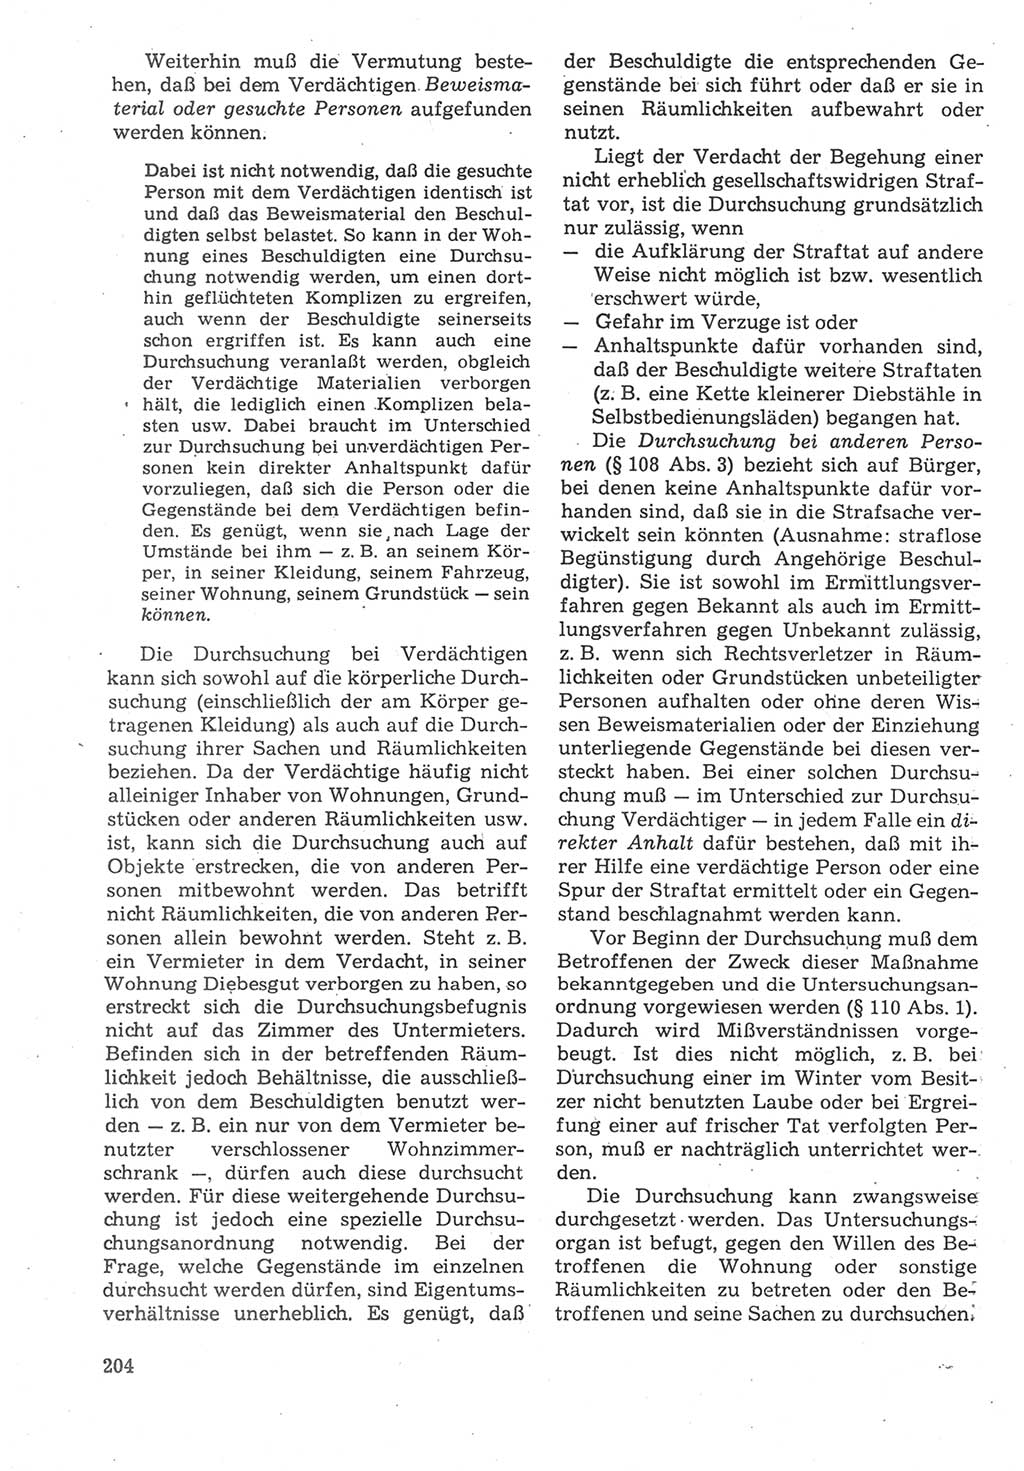 Strafverfahrensrecht [Deutsche Demokratische Republik (DDR)], Lehrbuch 1987, Seite 204 (Strafverf.-R. DDR Lb. 1987, S. 204)